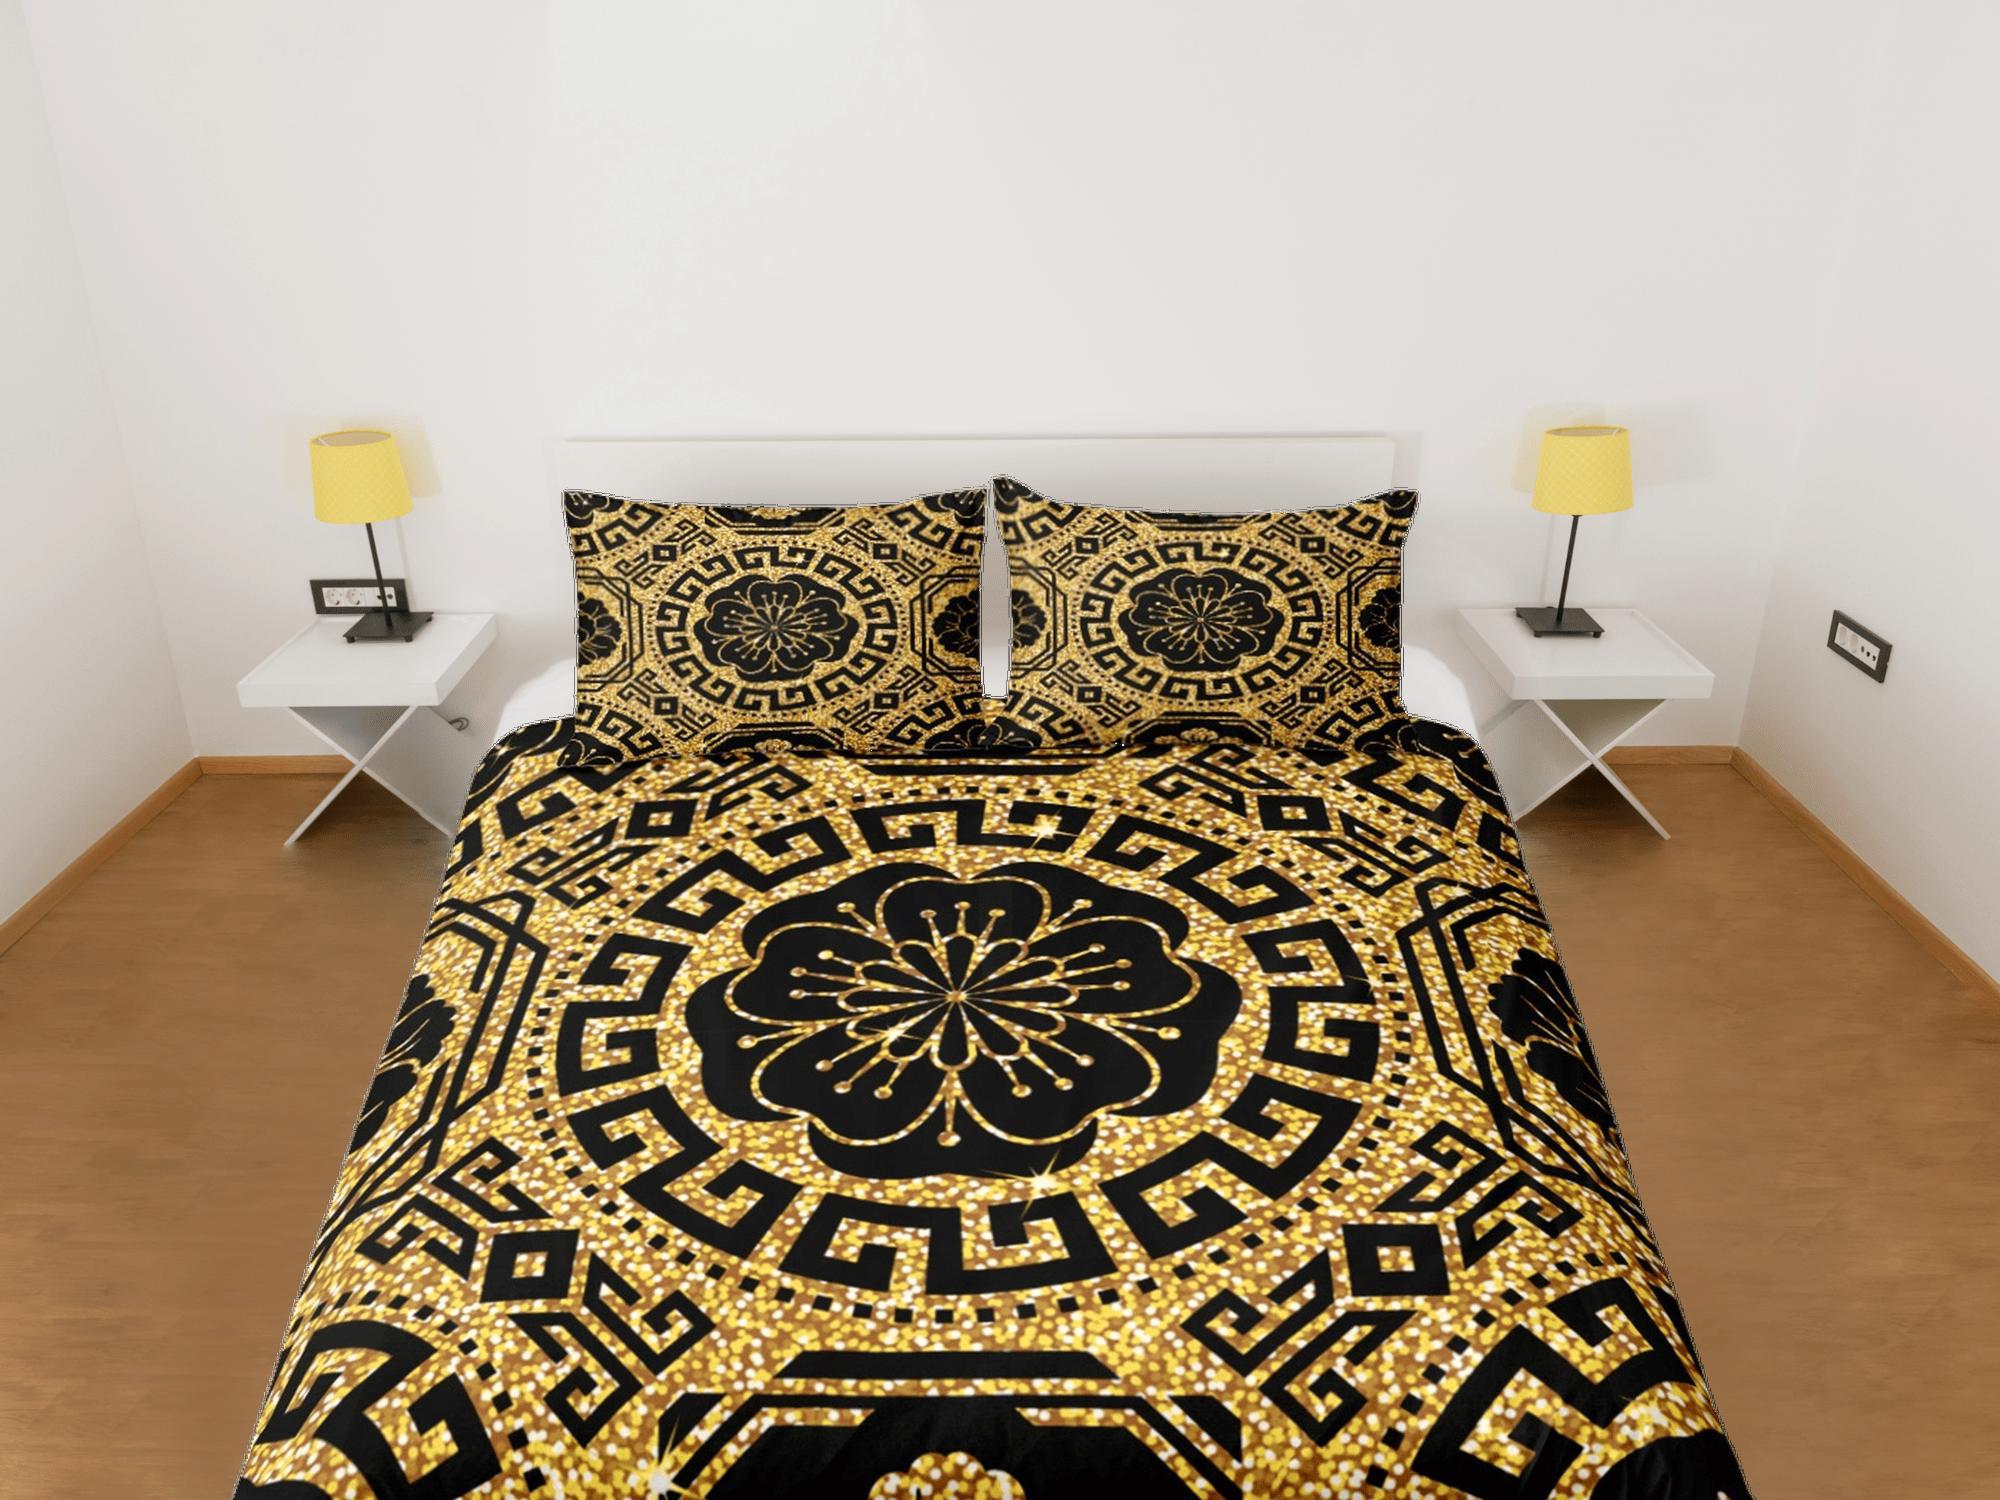 daintyduvet Baroque Gold Luxury Duvet Cover Set Aesthetic Bedding Set Full Victorian Decor